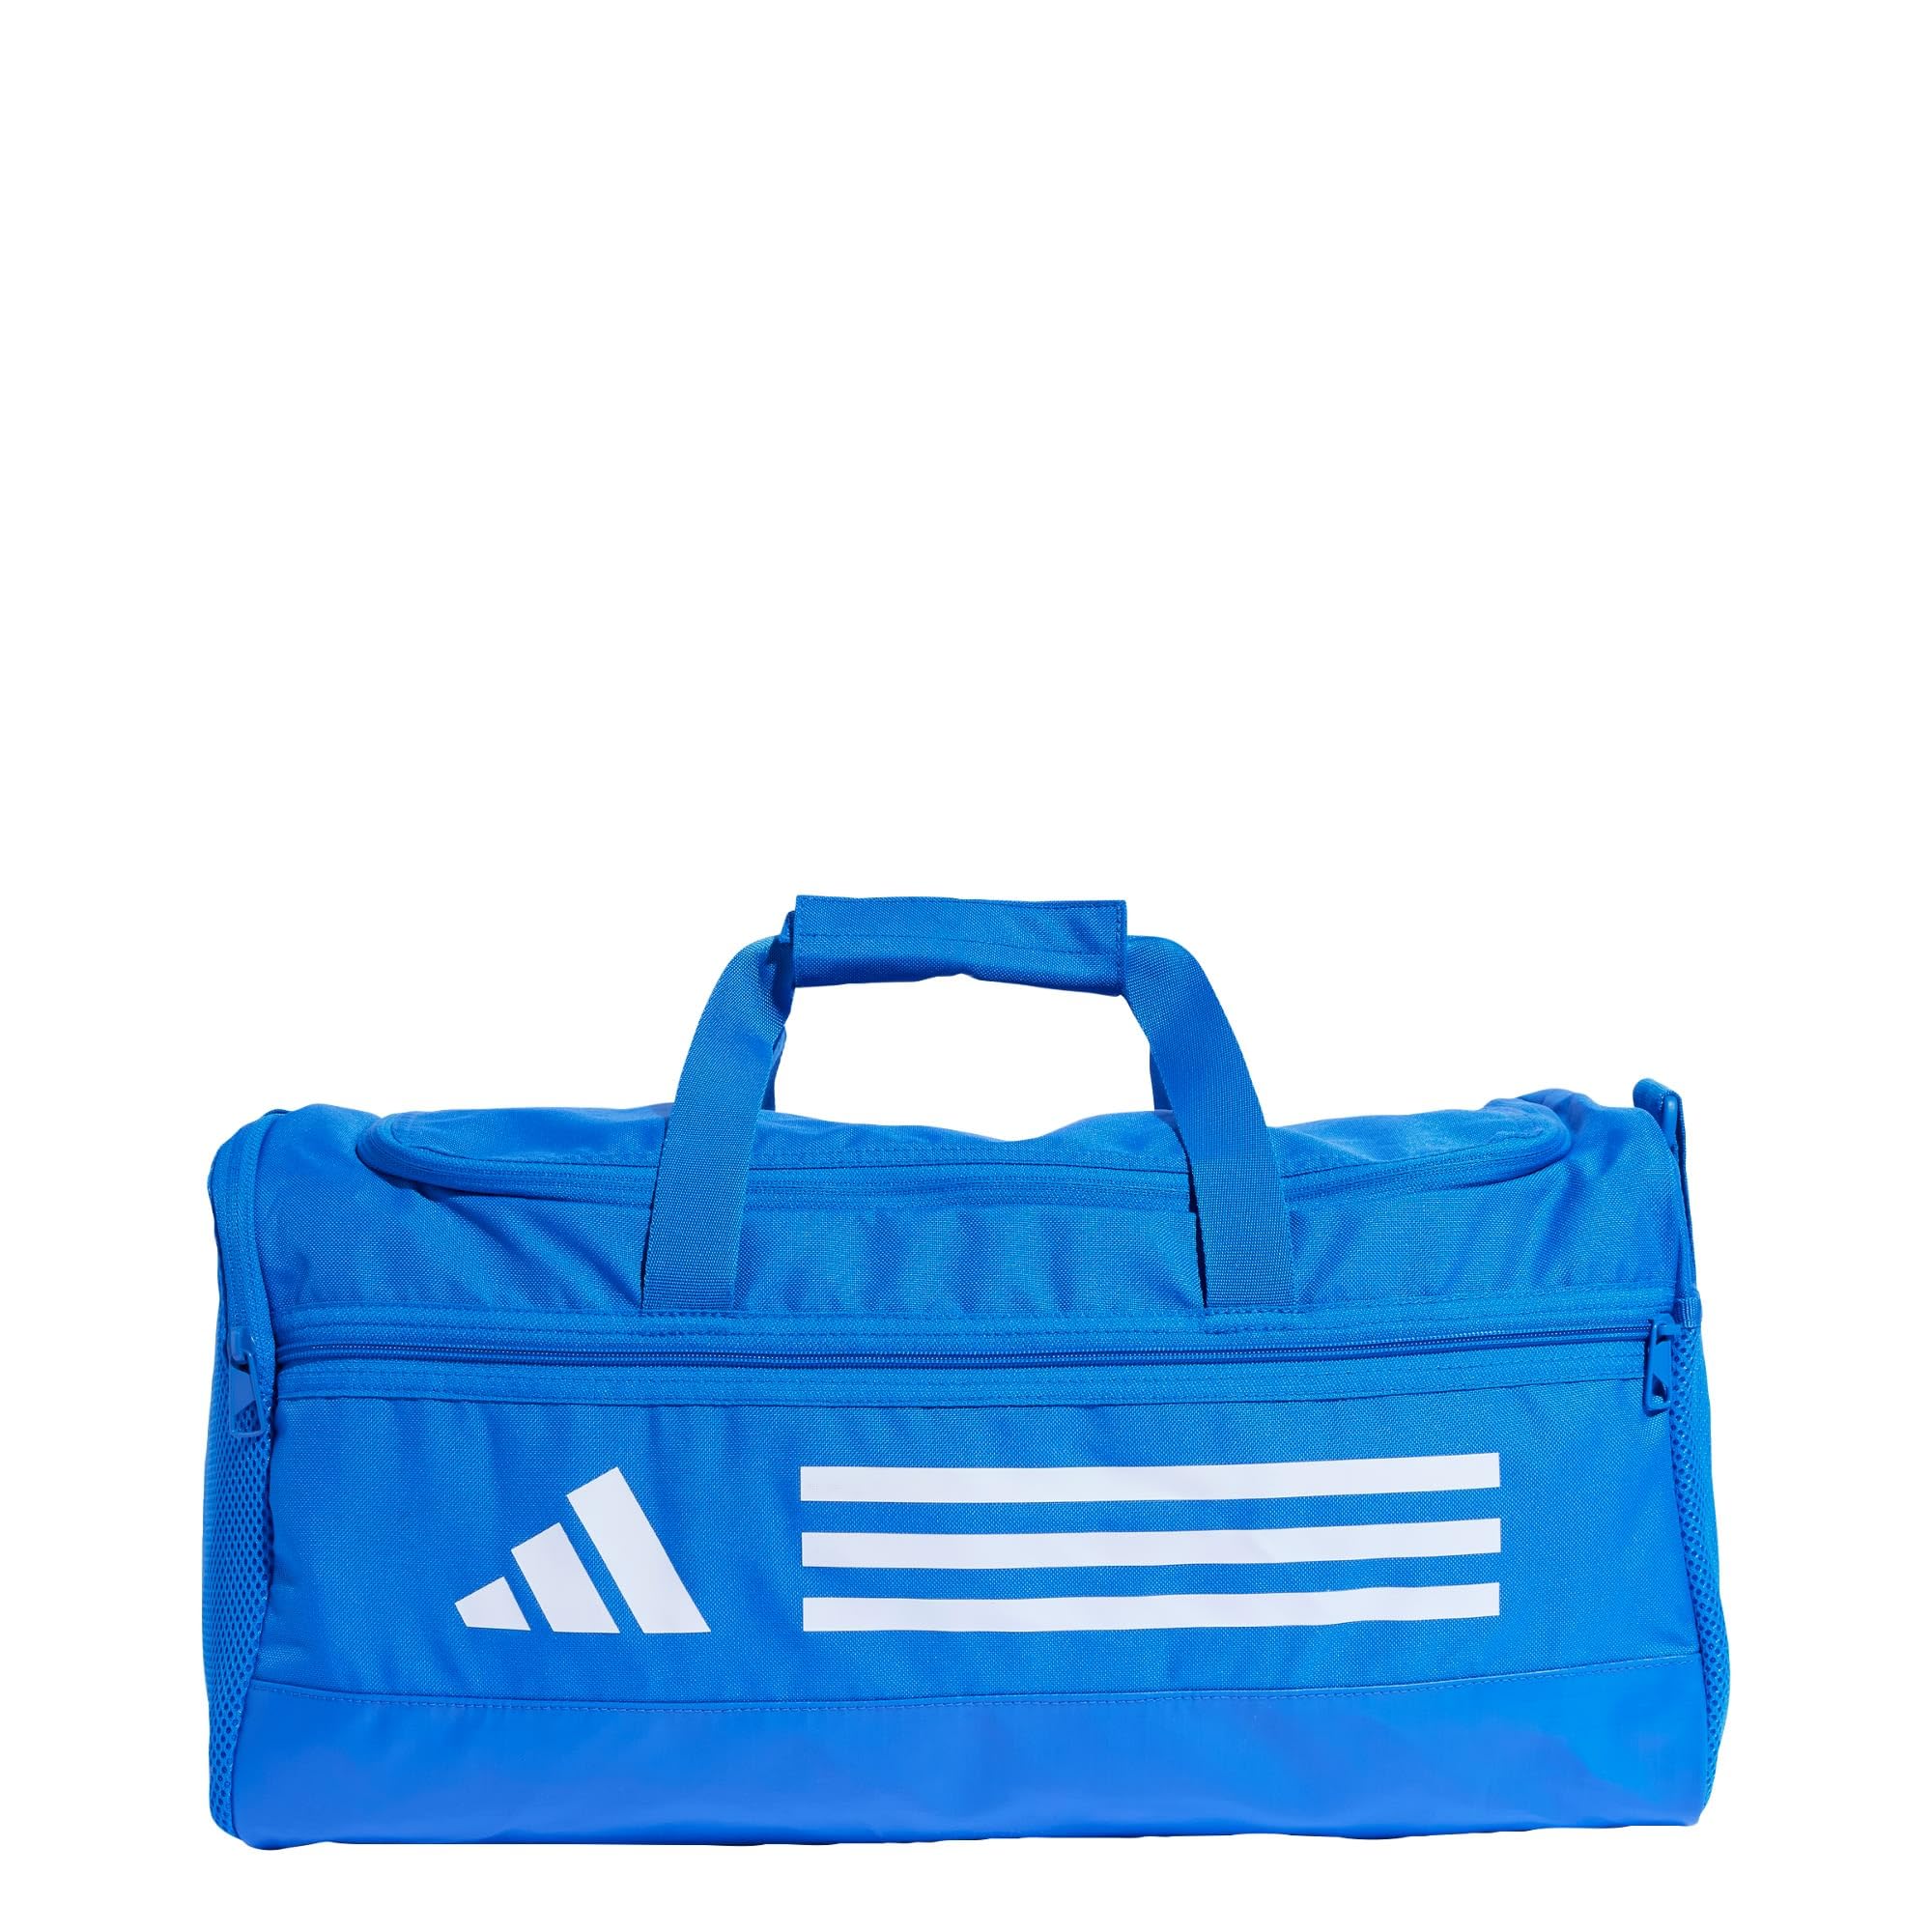 Adidas Unisex Essentials Trainings-Duffel, klein, helles Königsblau/Weiß, Einheitsgröße